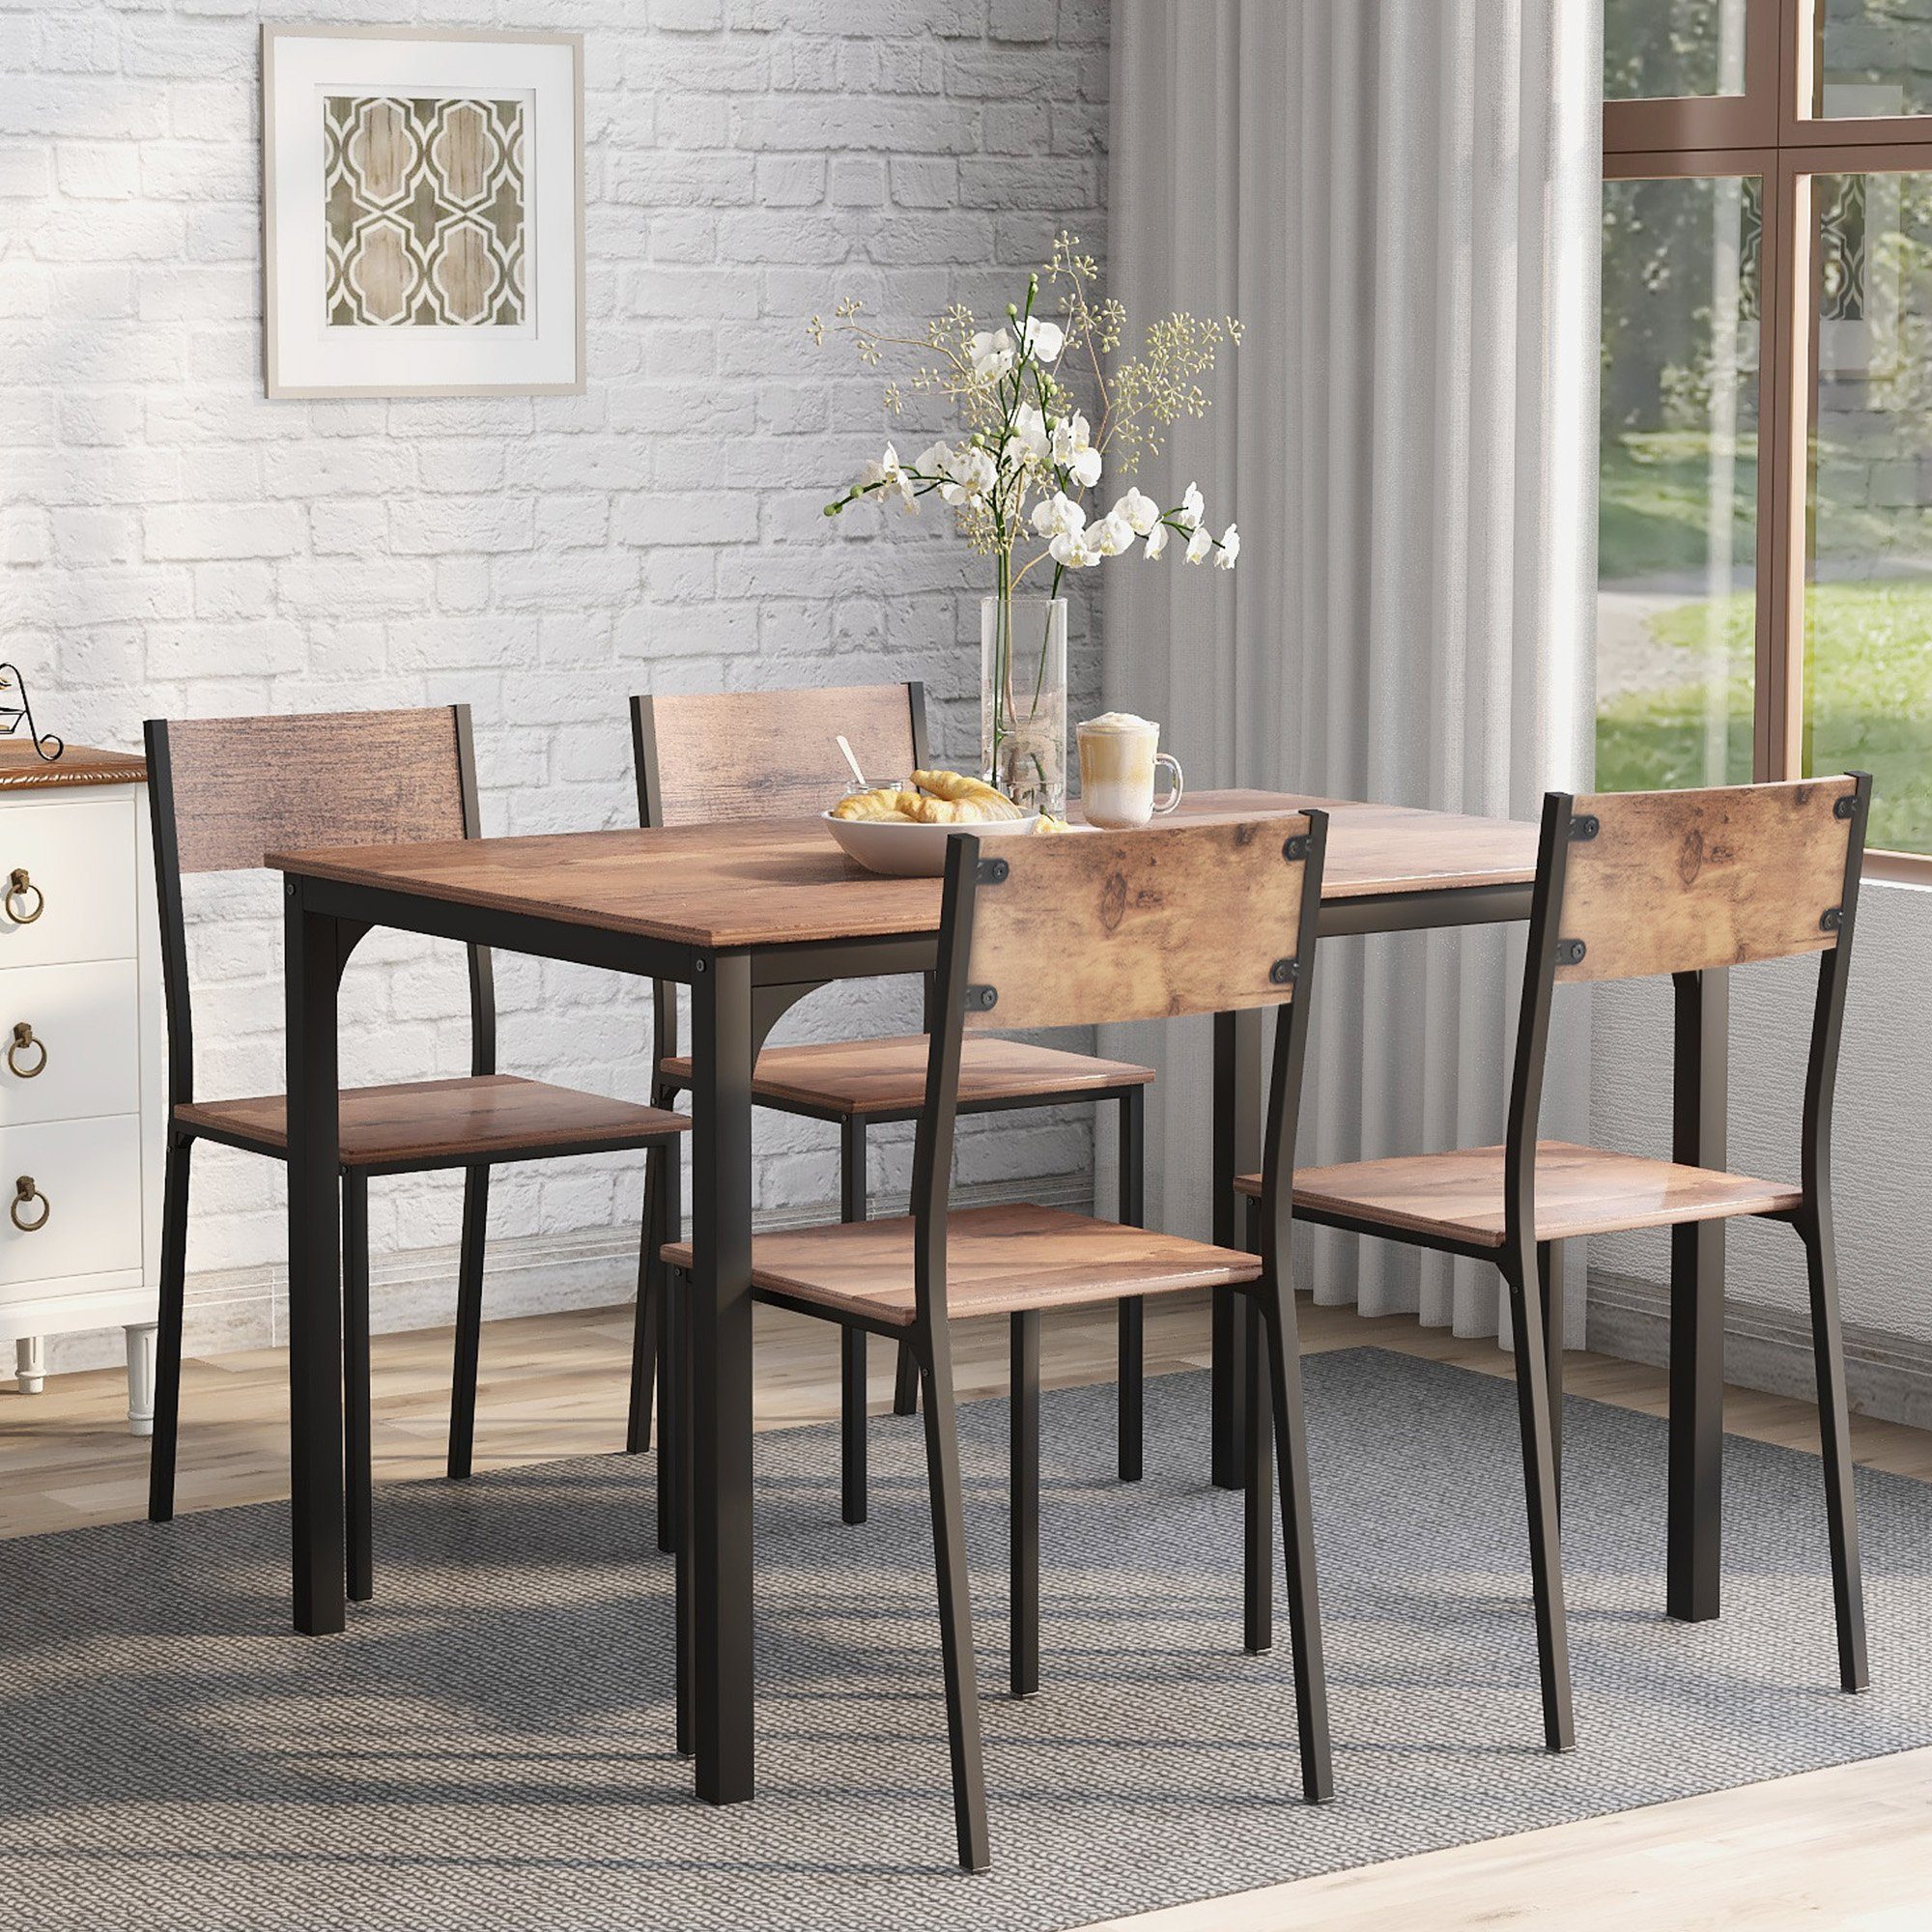 SOFTWEARY Esstisch mit Stühlen, Esstisch-Set Esszimmergruppe 4 (5-teilig), Küchentisch